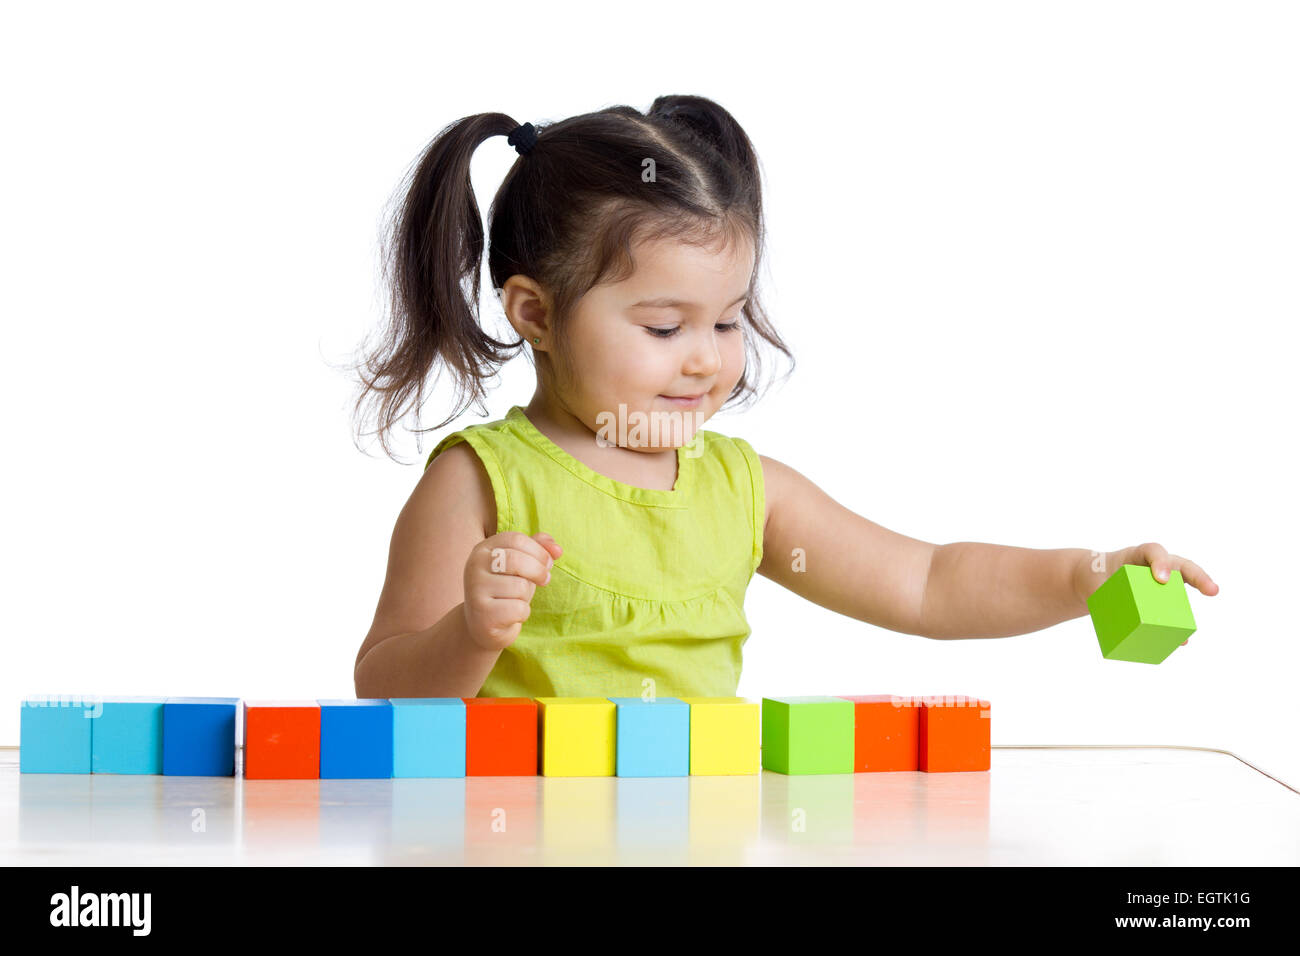 Niño juega con bloques de construcción y aprendizaje de colores Foto de stock